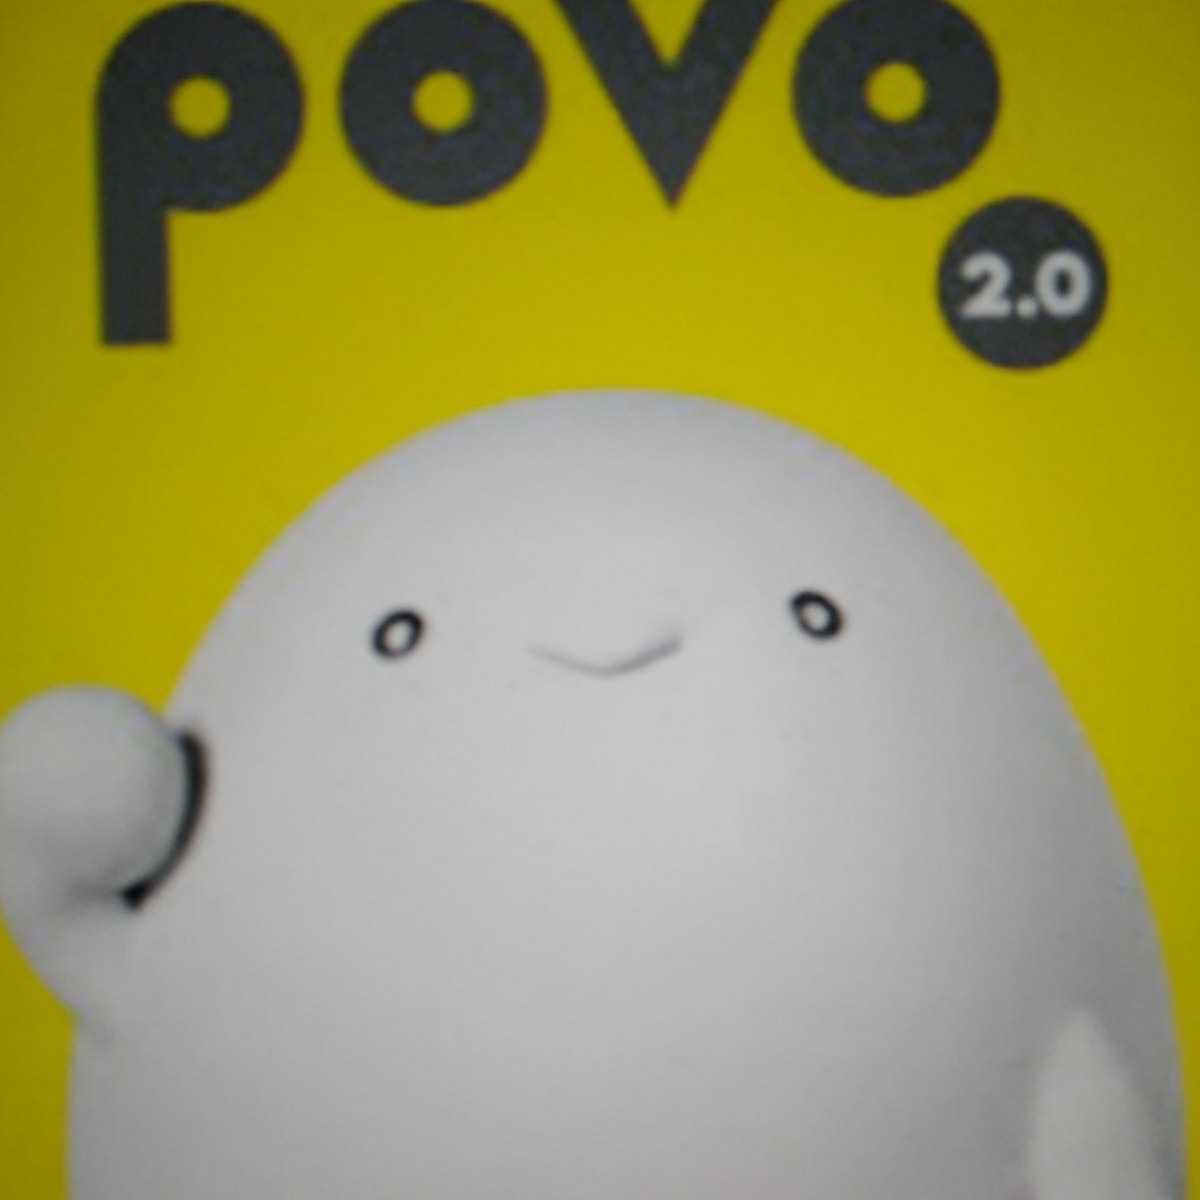 POVO 2.0 プロモコード 300MB 登録期限5月15日_画像1